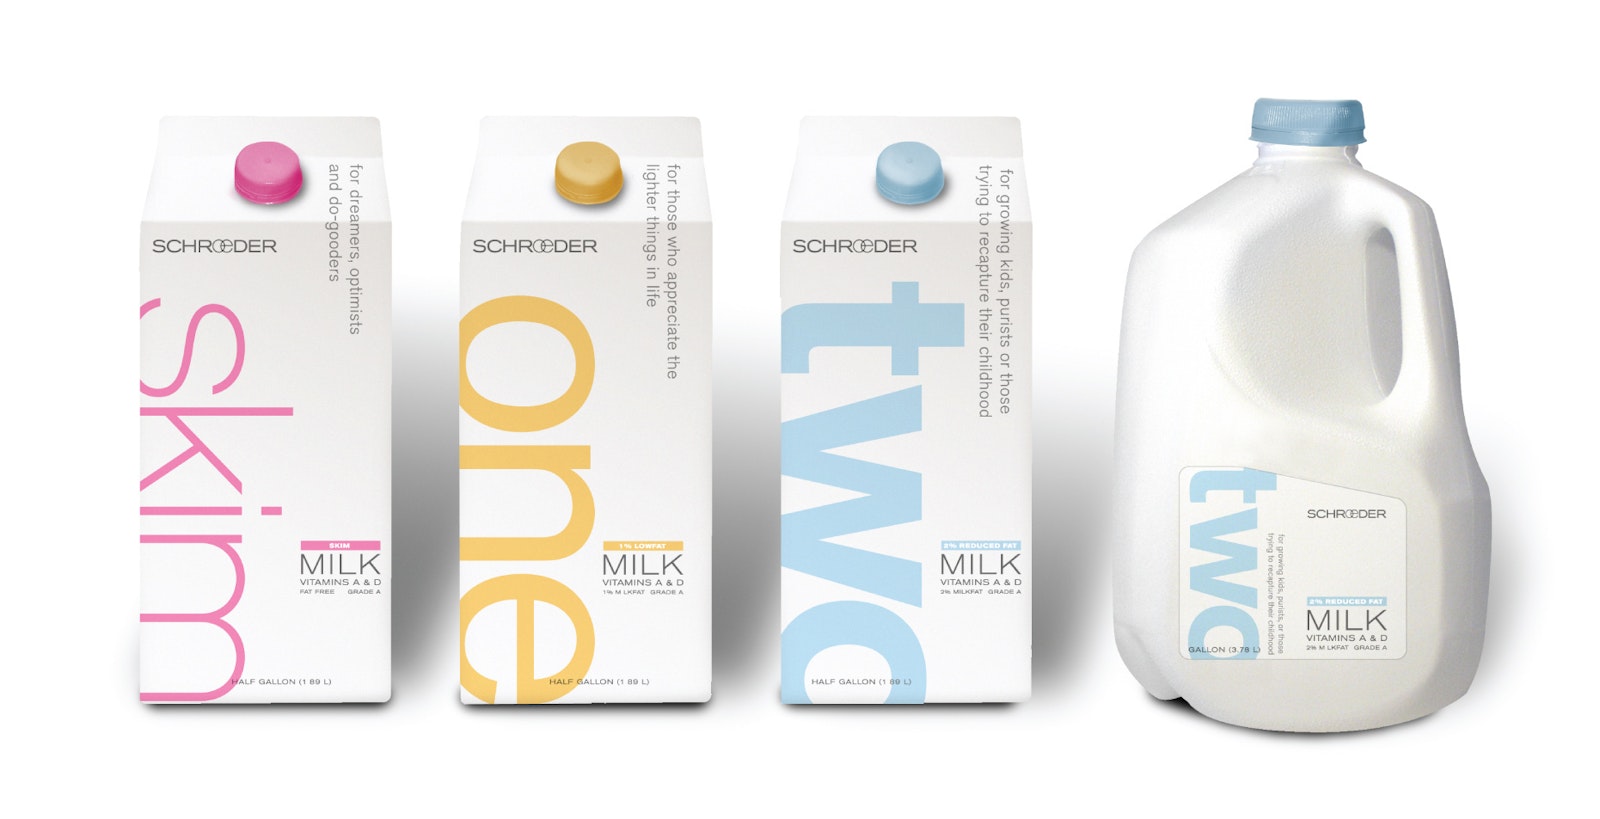 Schroeder milk carton packaging design for three flavors and milk jug design.